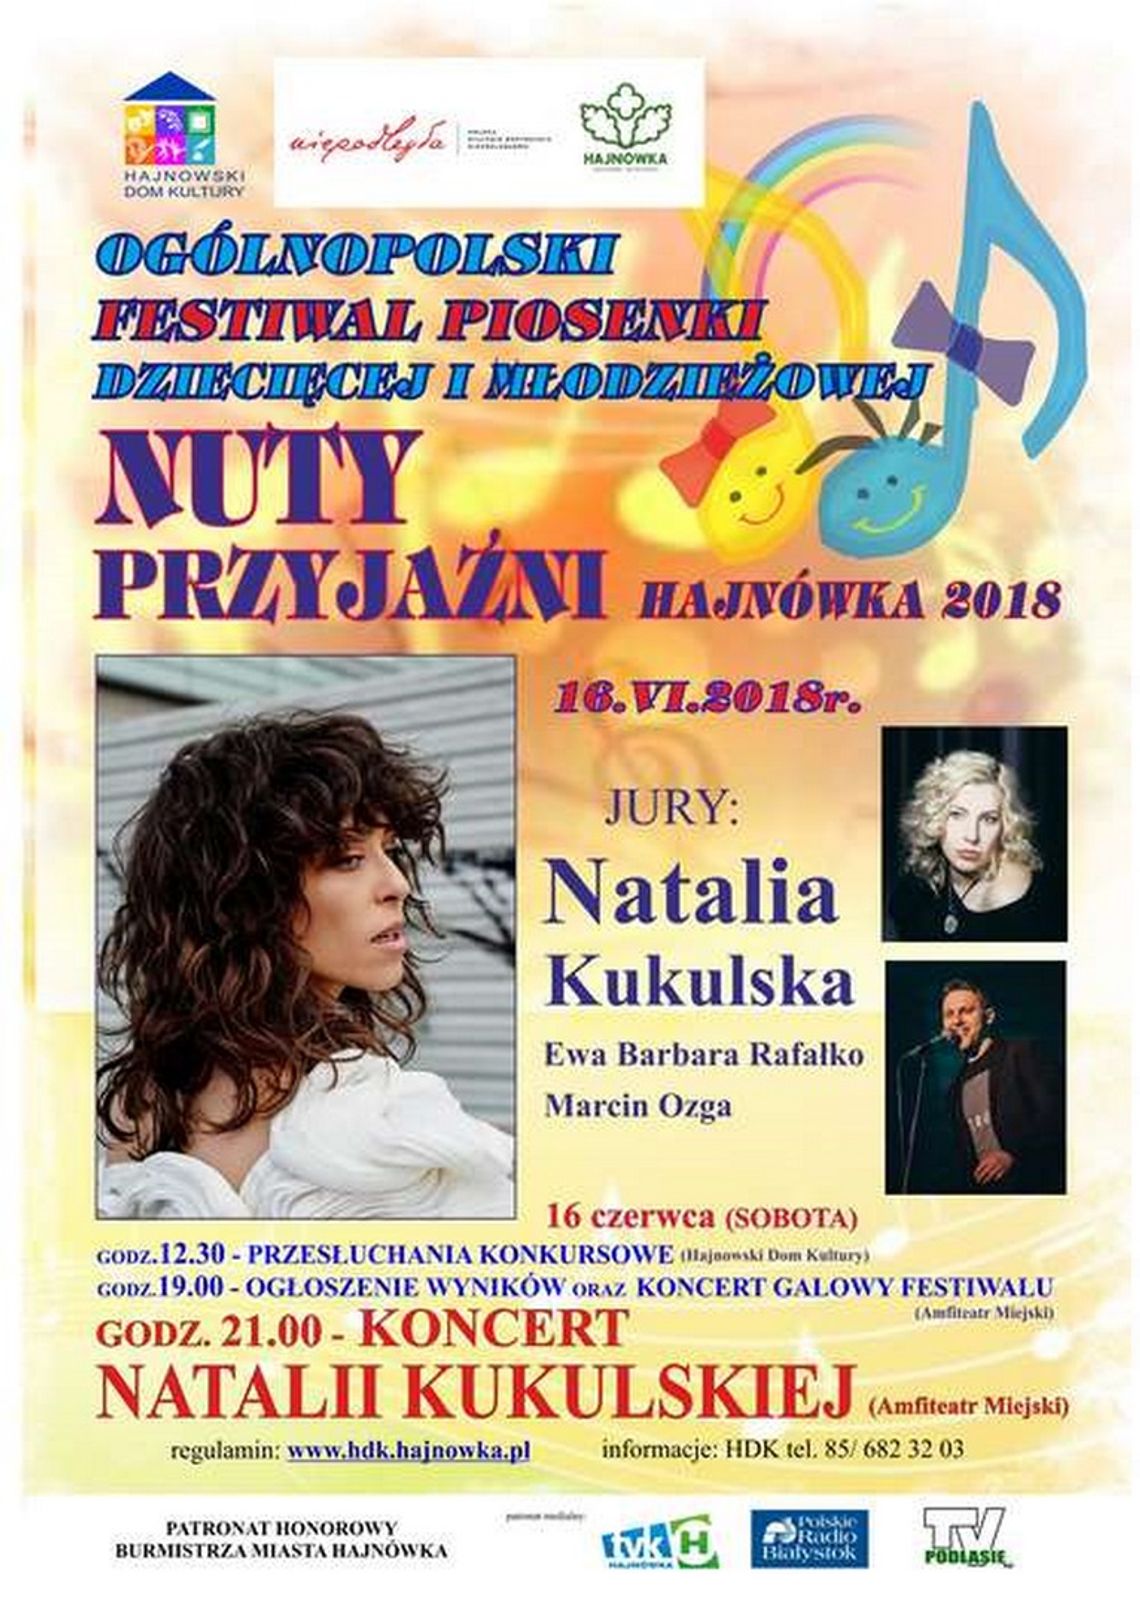  Ogólnopolskiego Festiwalu Piosenki Dziecięcej i Młodzieżowej NUTY PRZYJAŹNI Hajnówka 2018